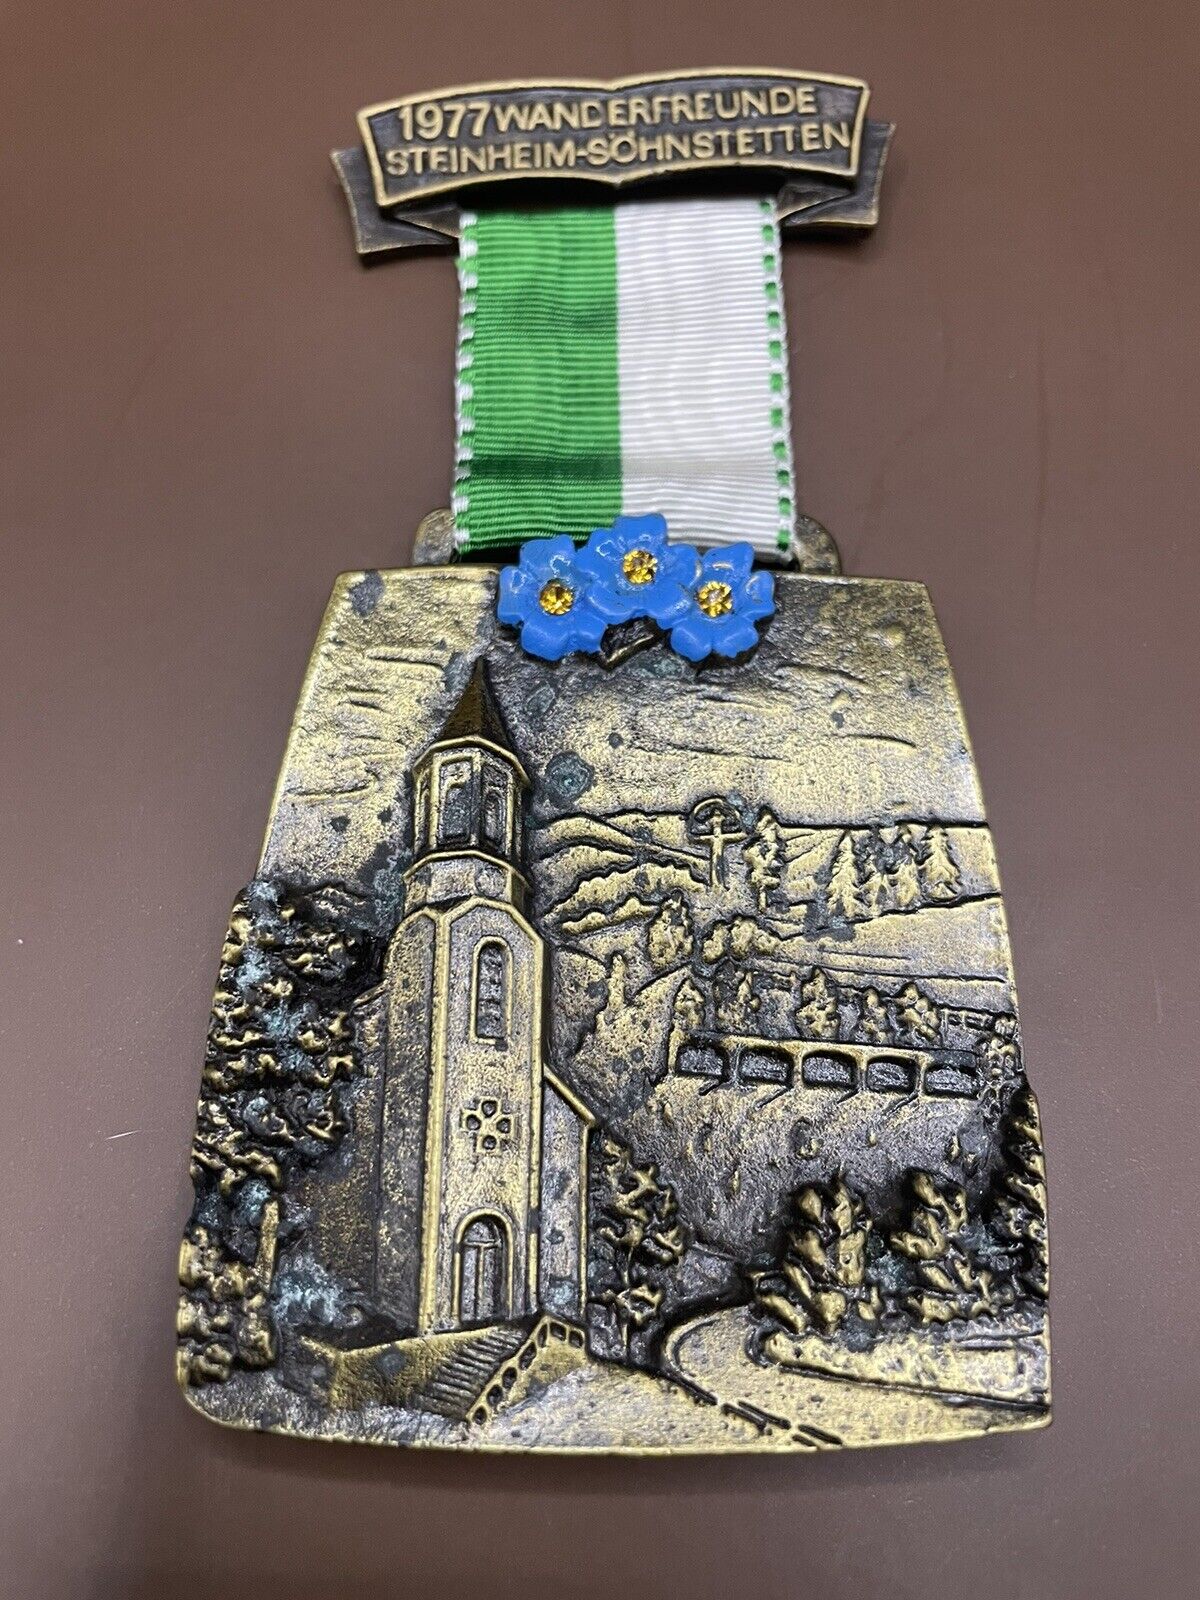 Vintage German Hiking Medal 1977 Wanderfreunde Steinheim-Schstetten Medallion